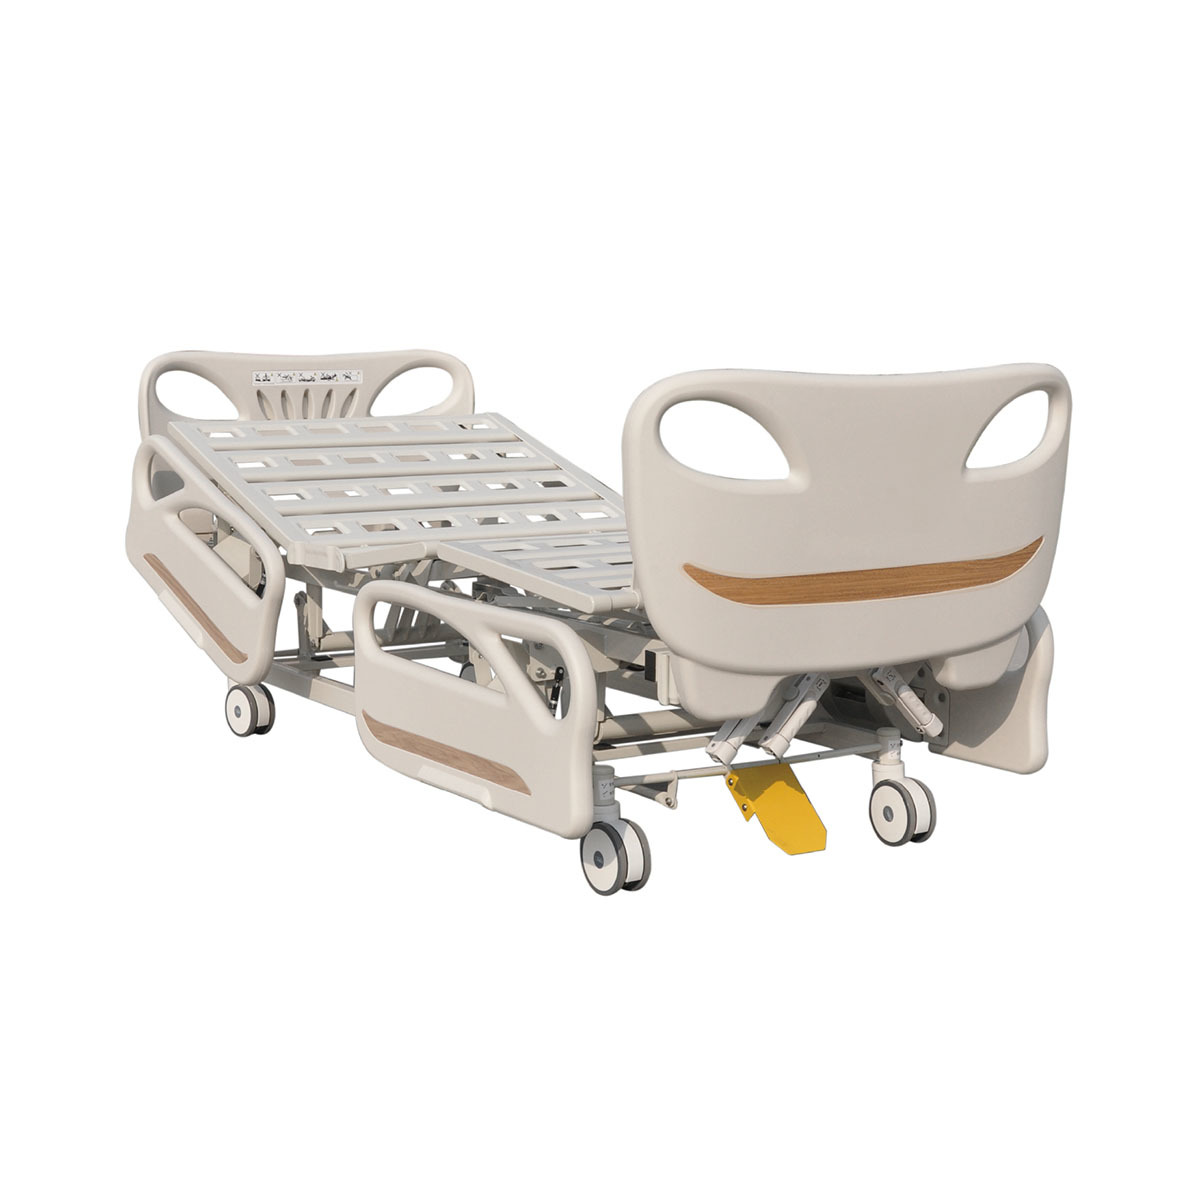 HL-A134A Manual  Hospital Bed